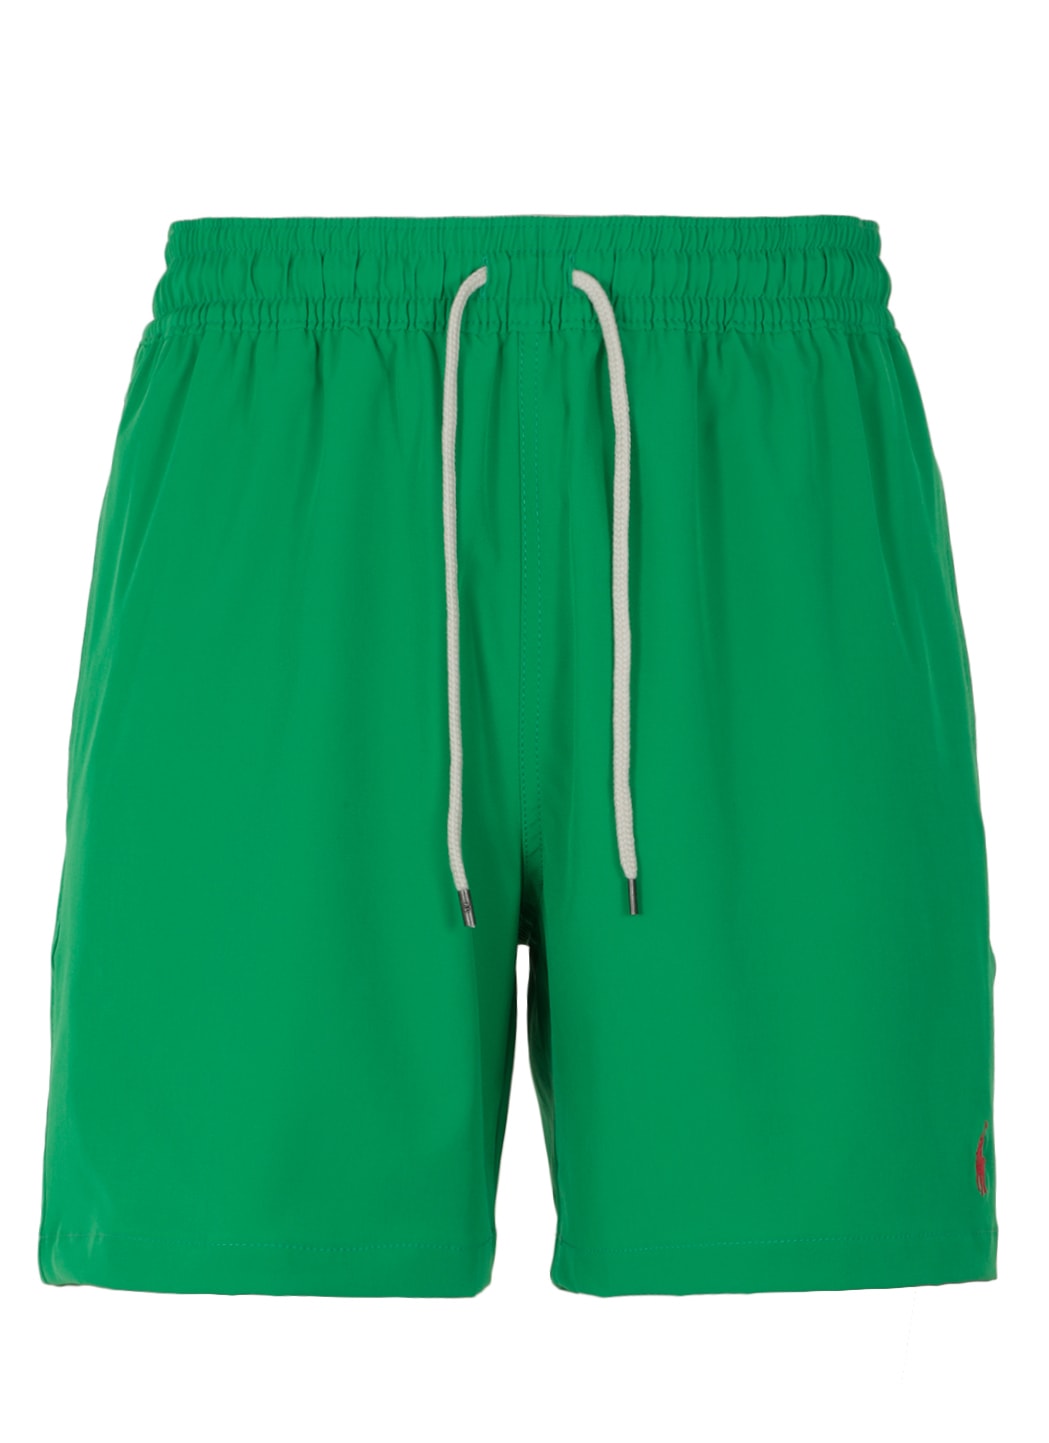 Ralph Lauren Swimsuit With Monogram In Golf Green